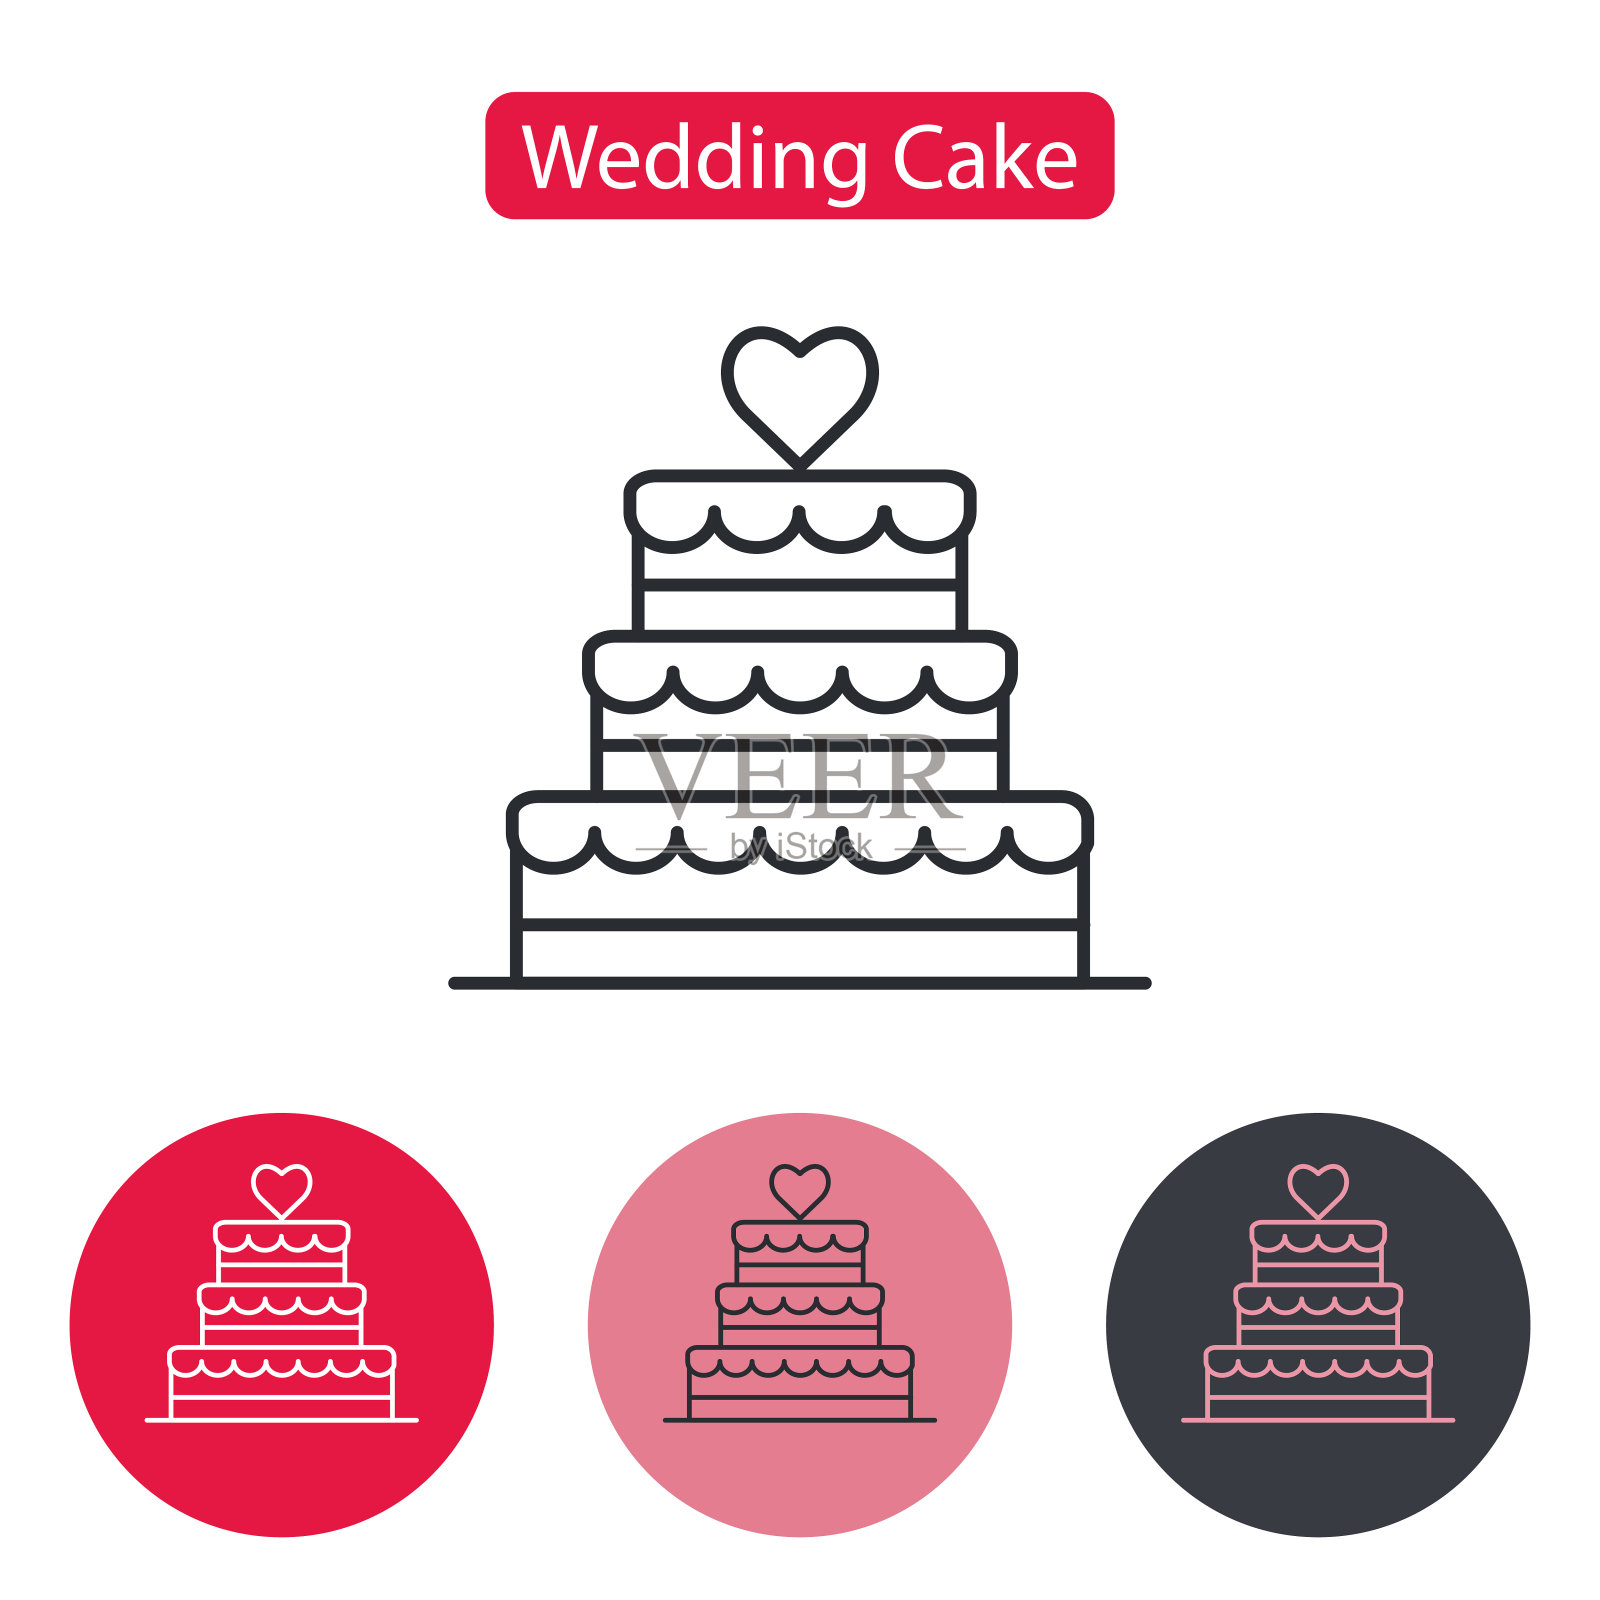 婚礼蛋糕上堆满了心形甜点。插画图片素材